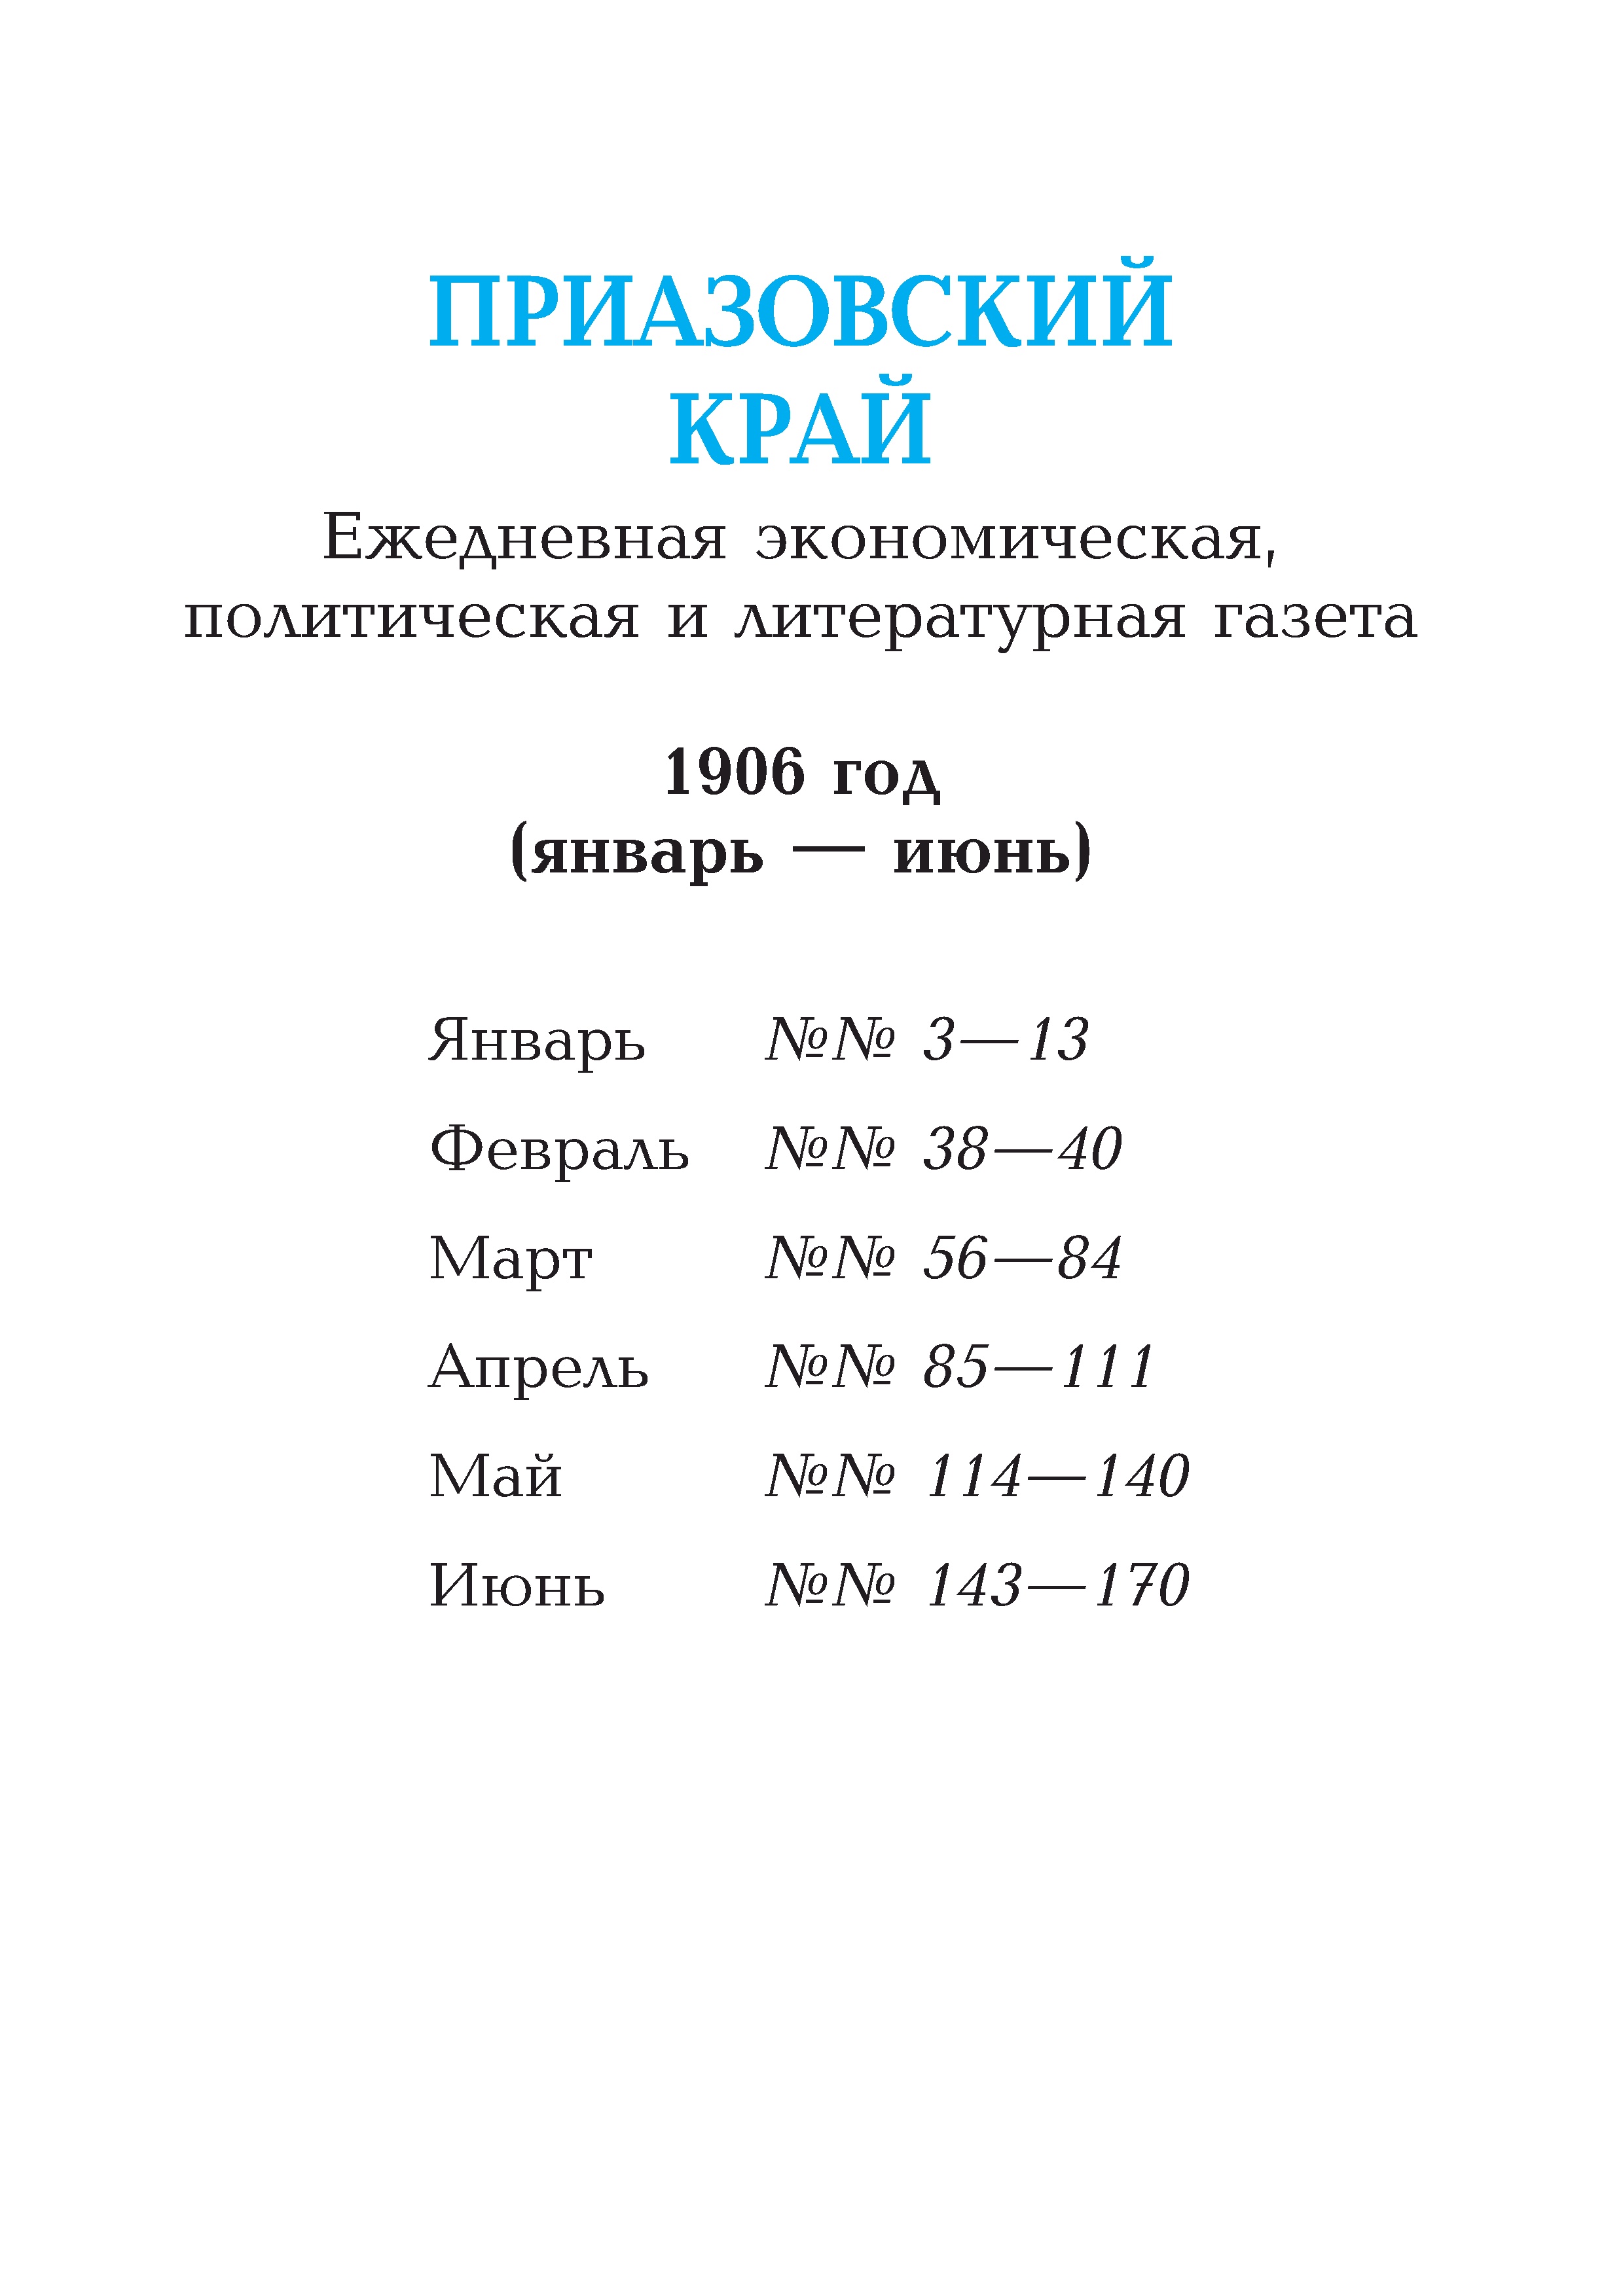 Приазовский край 1906 № 003-170 (январь-июнь)